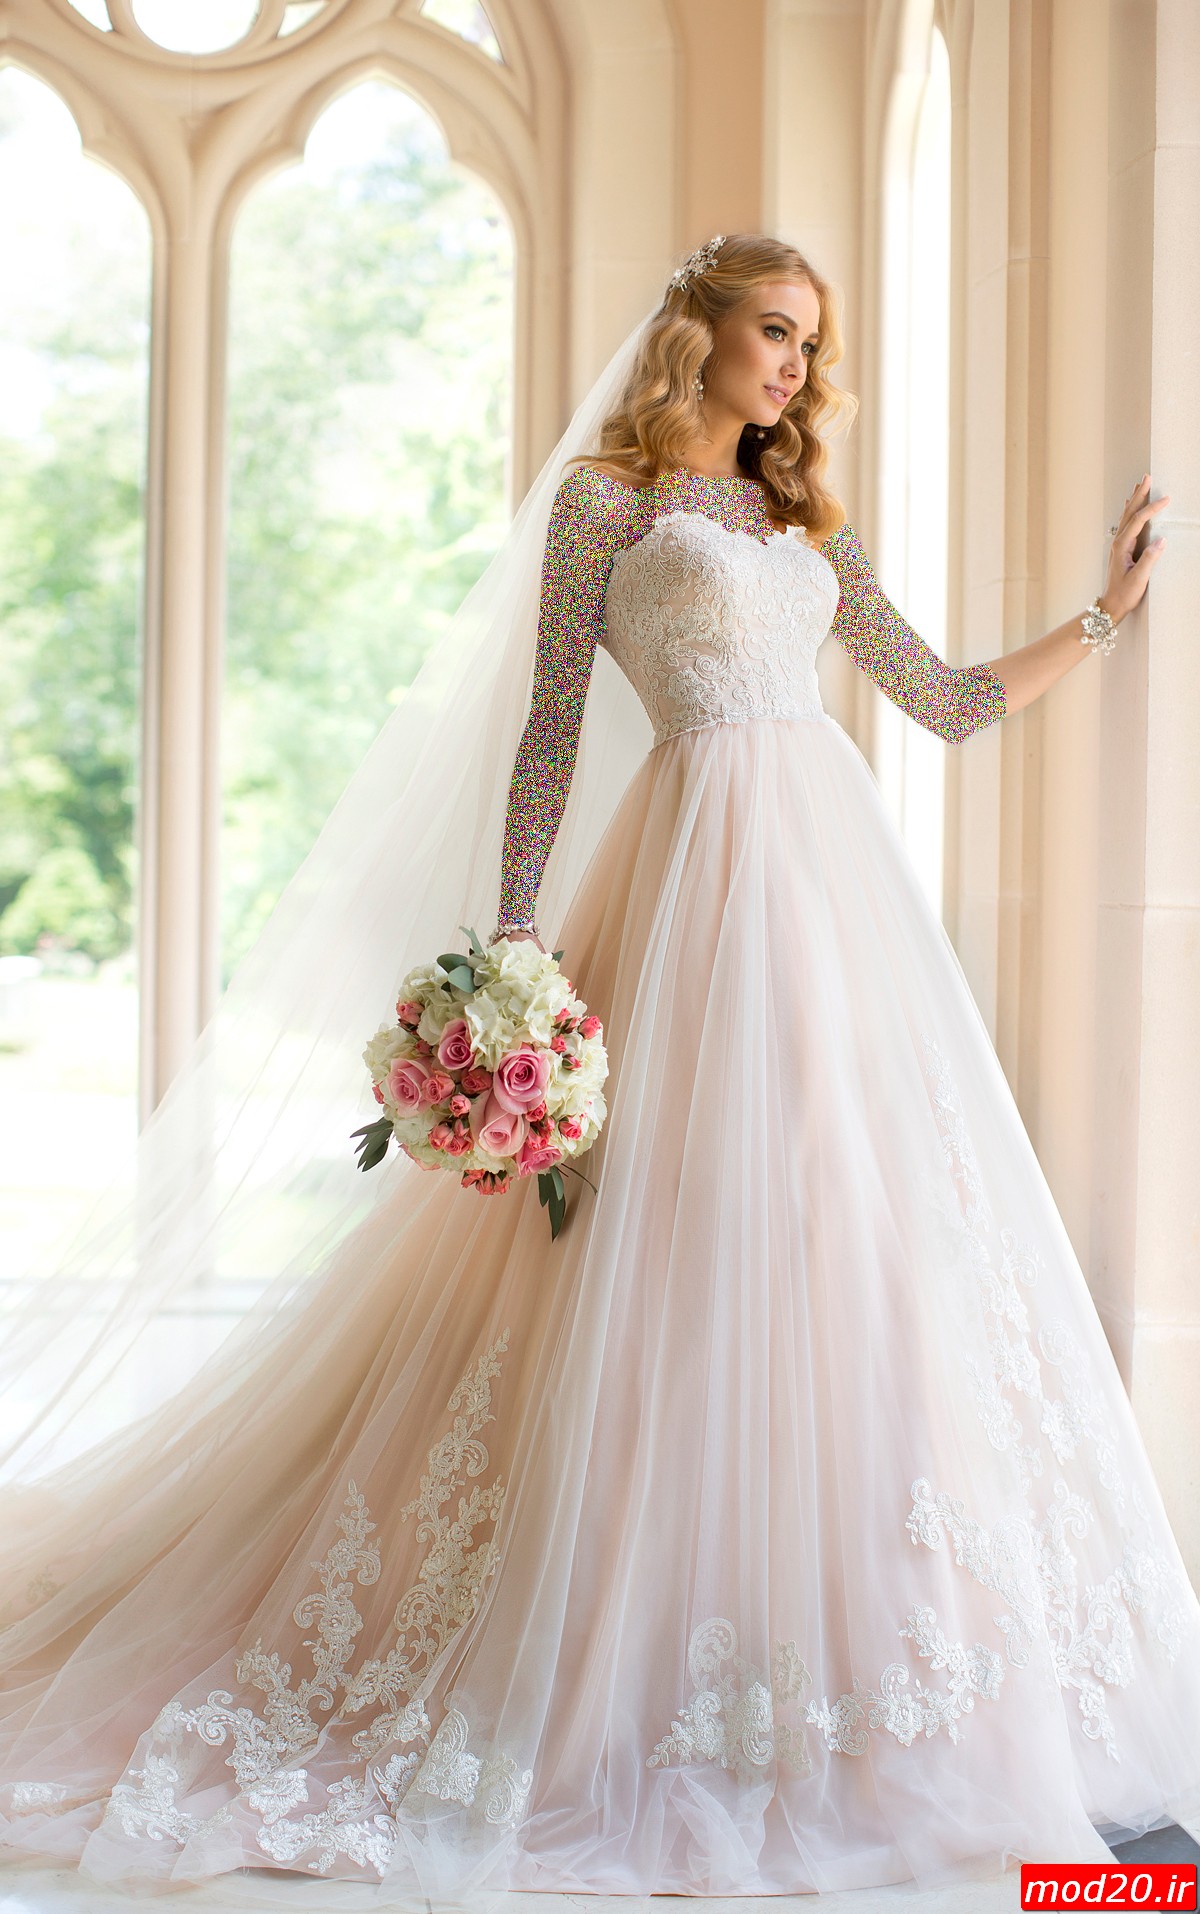 عکس مدل لباس عروس های زیبا و جدید سال 95 و بهترین لباس عروس مزون عروس لباس عروس خارجی2016